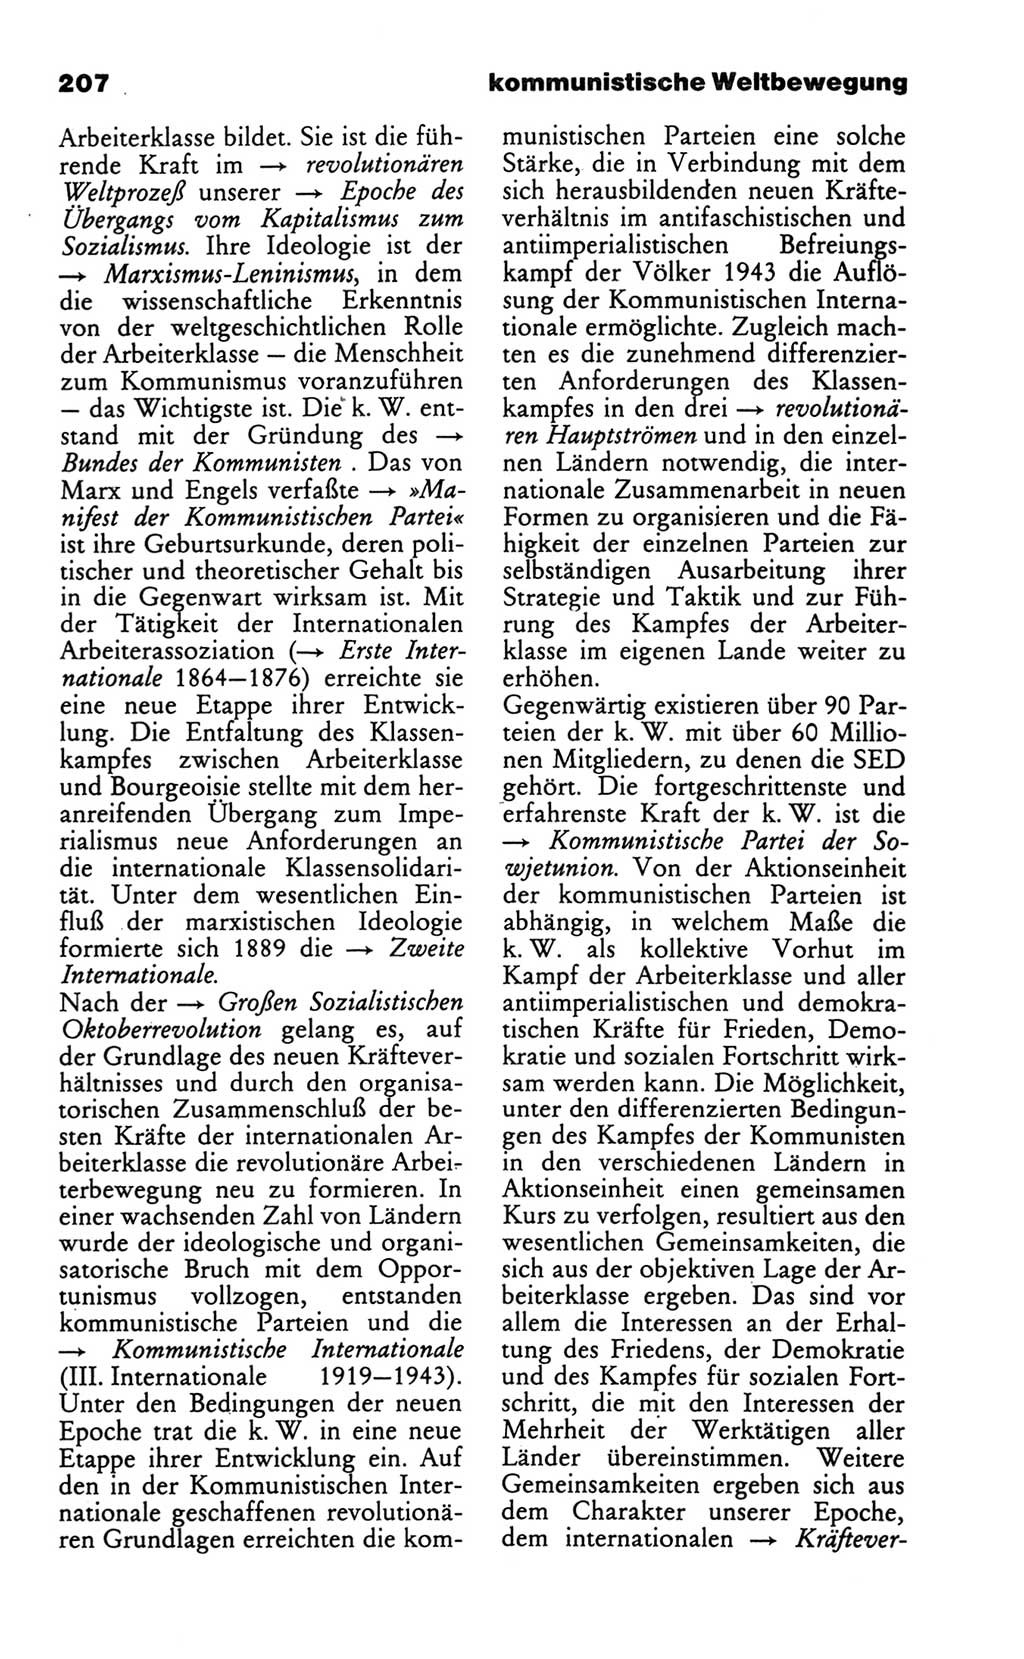 Wörterbuch des wissenschaftlichen Kommunismus [Deutsche Demokratische Republik (DDR)] 1986, Seite 207 (Wb. wiss. Komm. DDR 1986, S. 207)